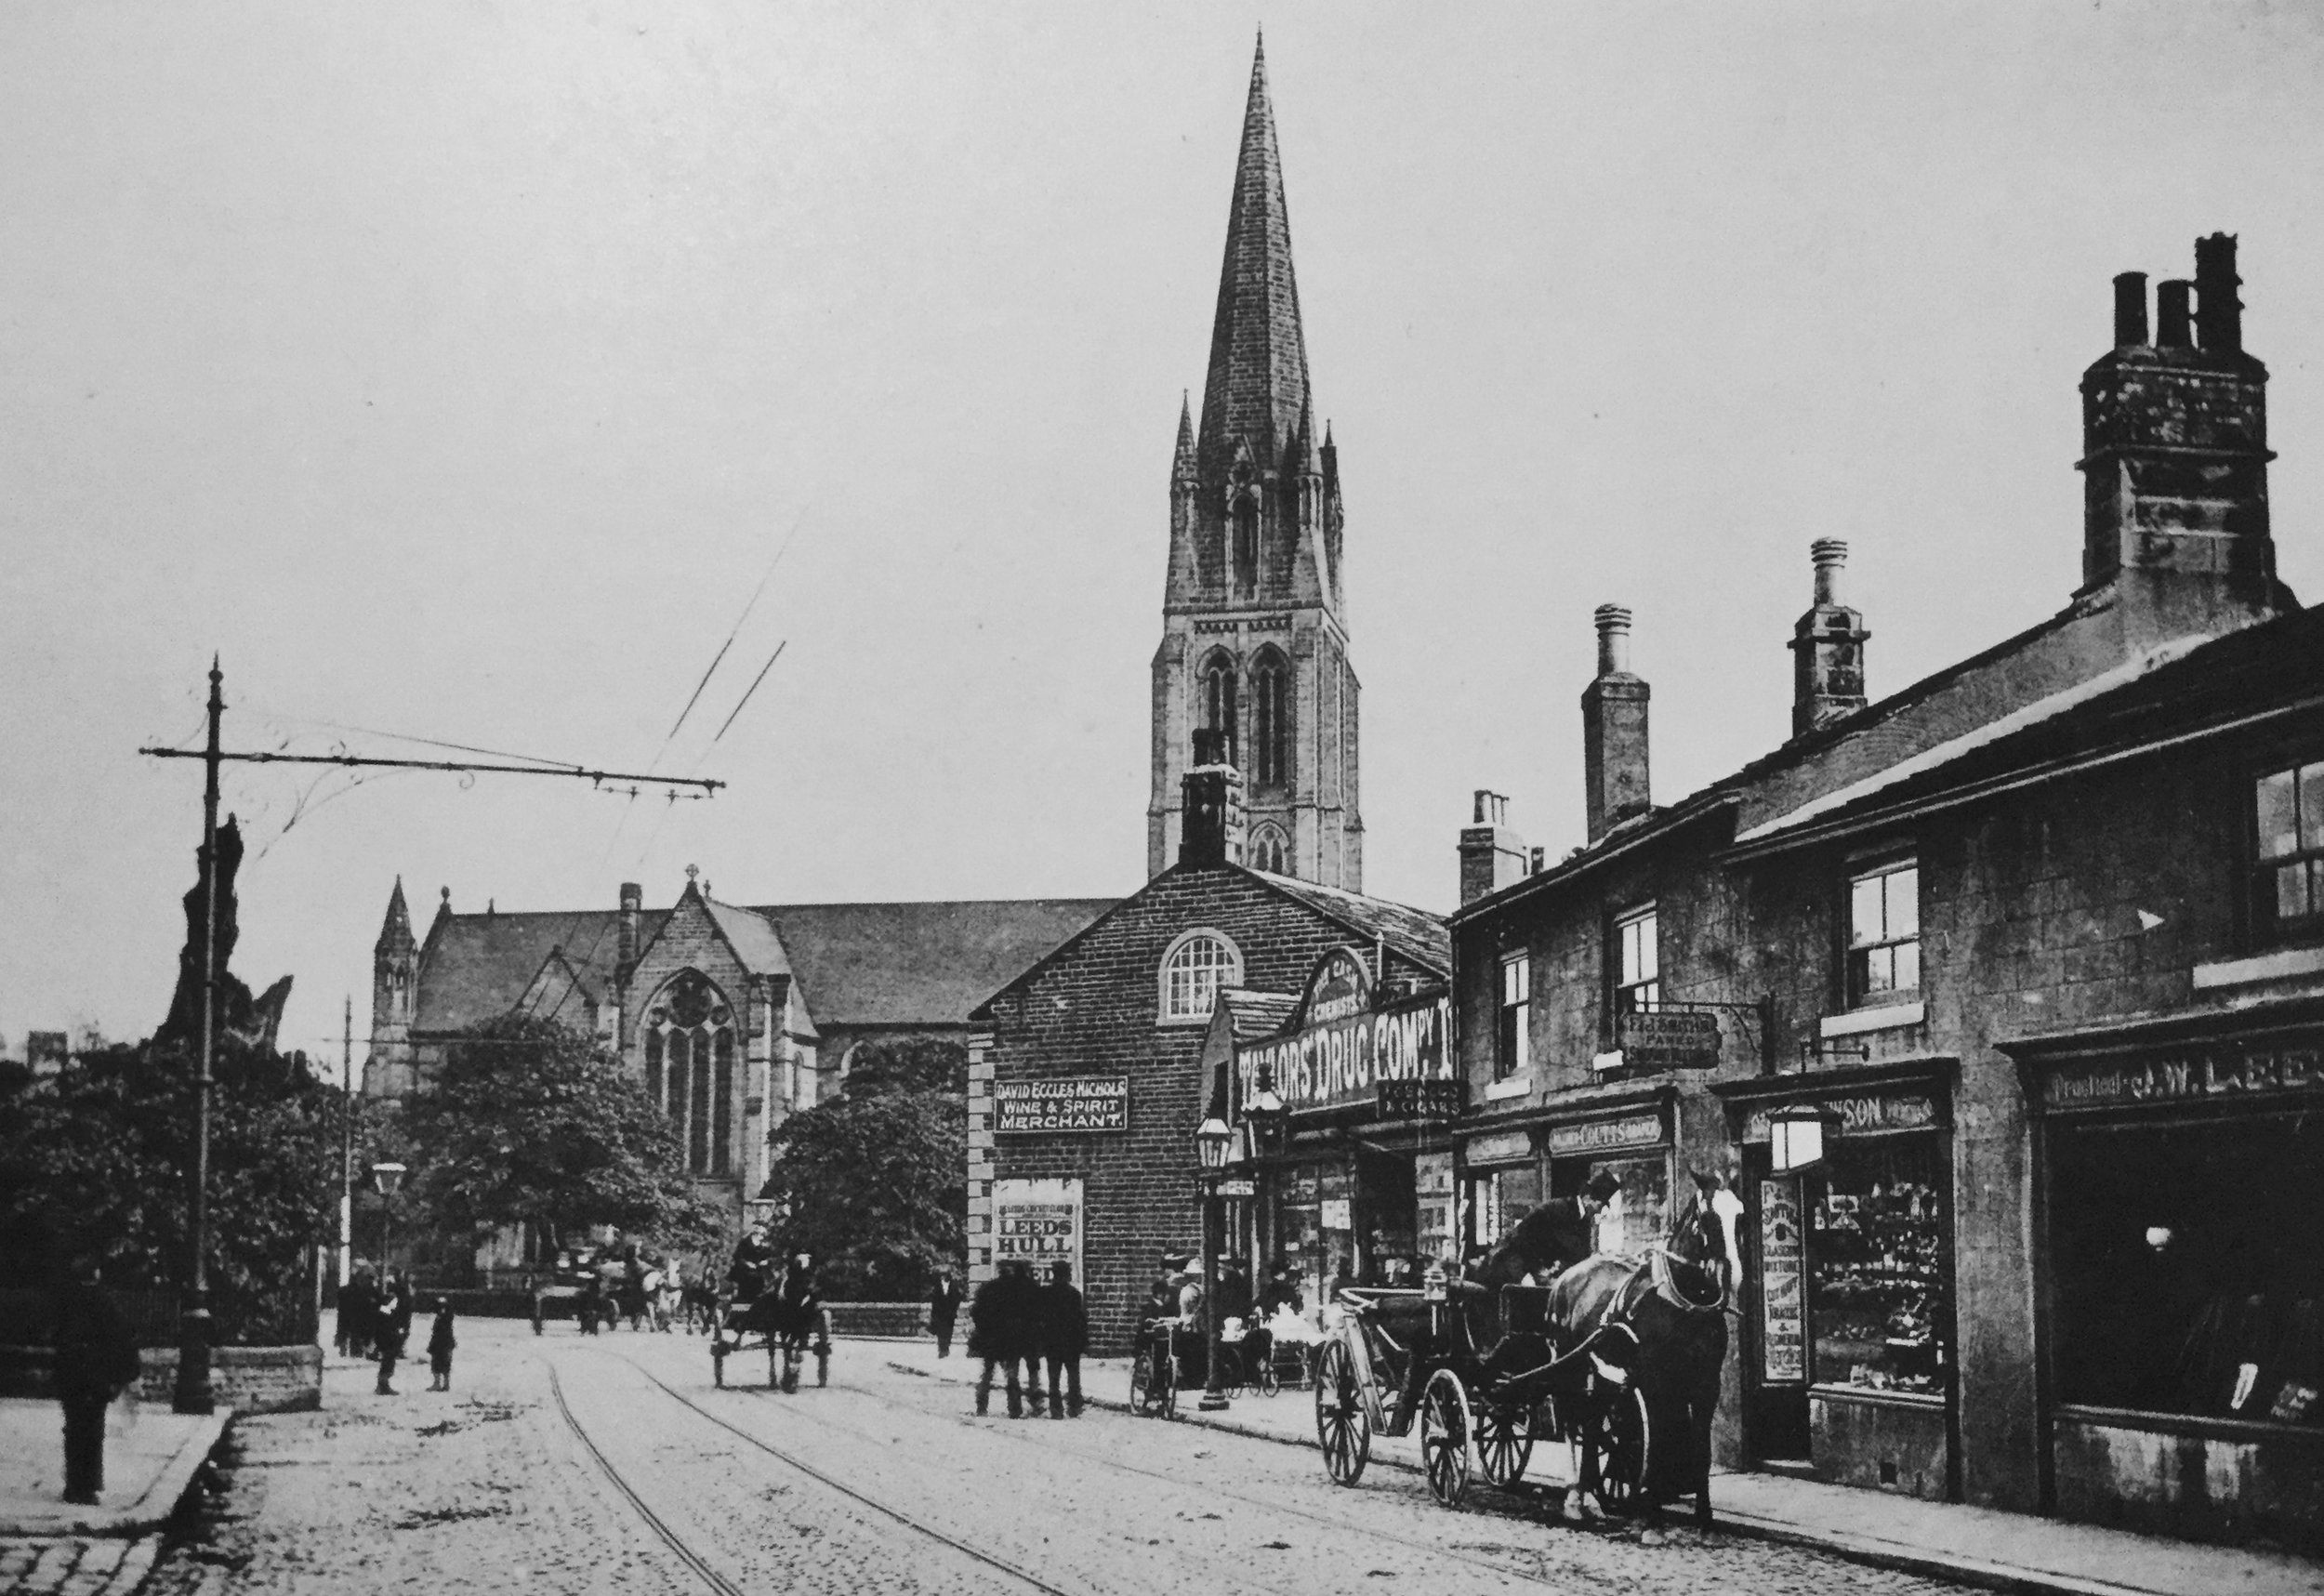 St Michael's Church, circa 1903